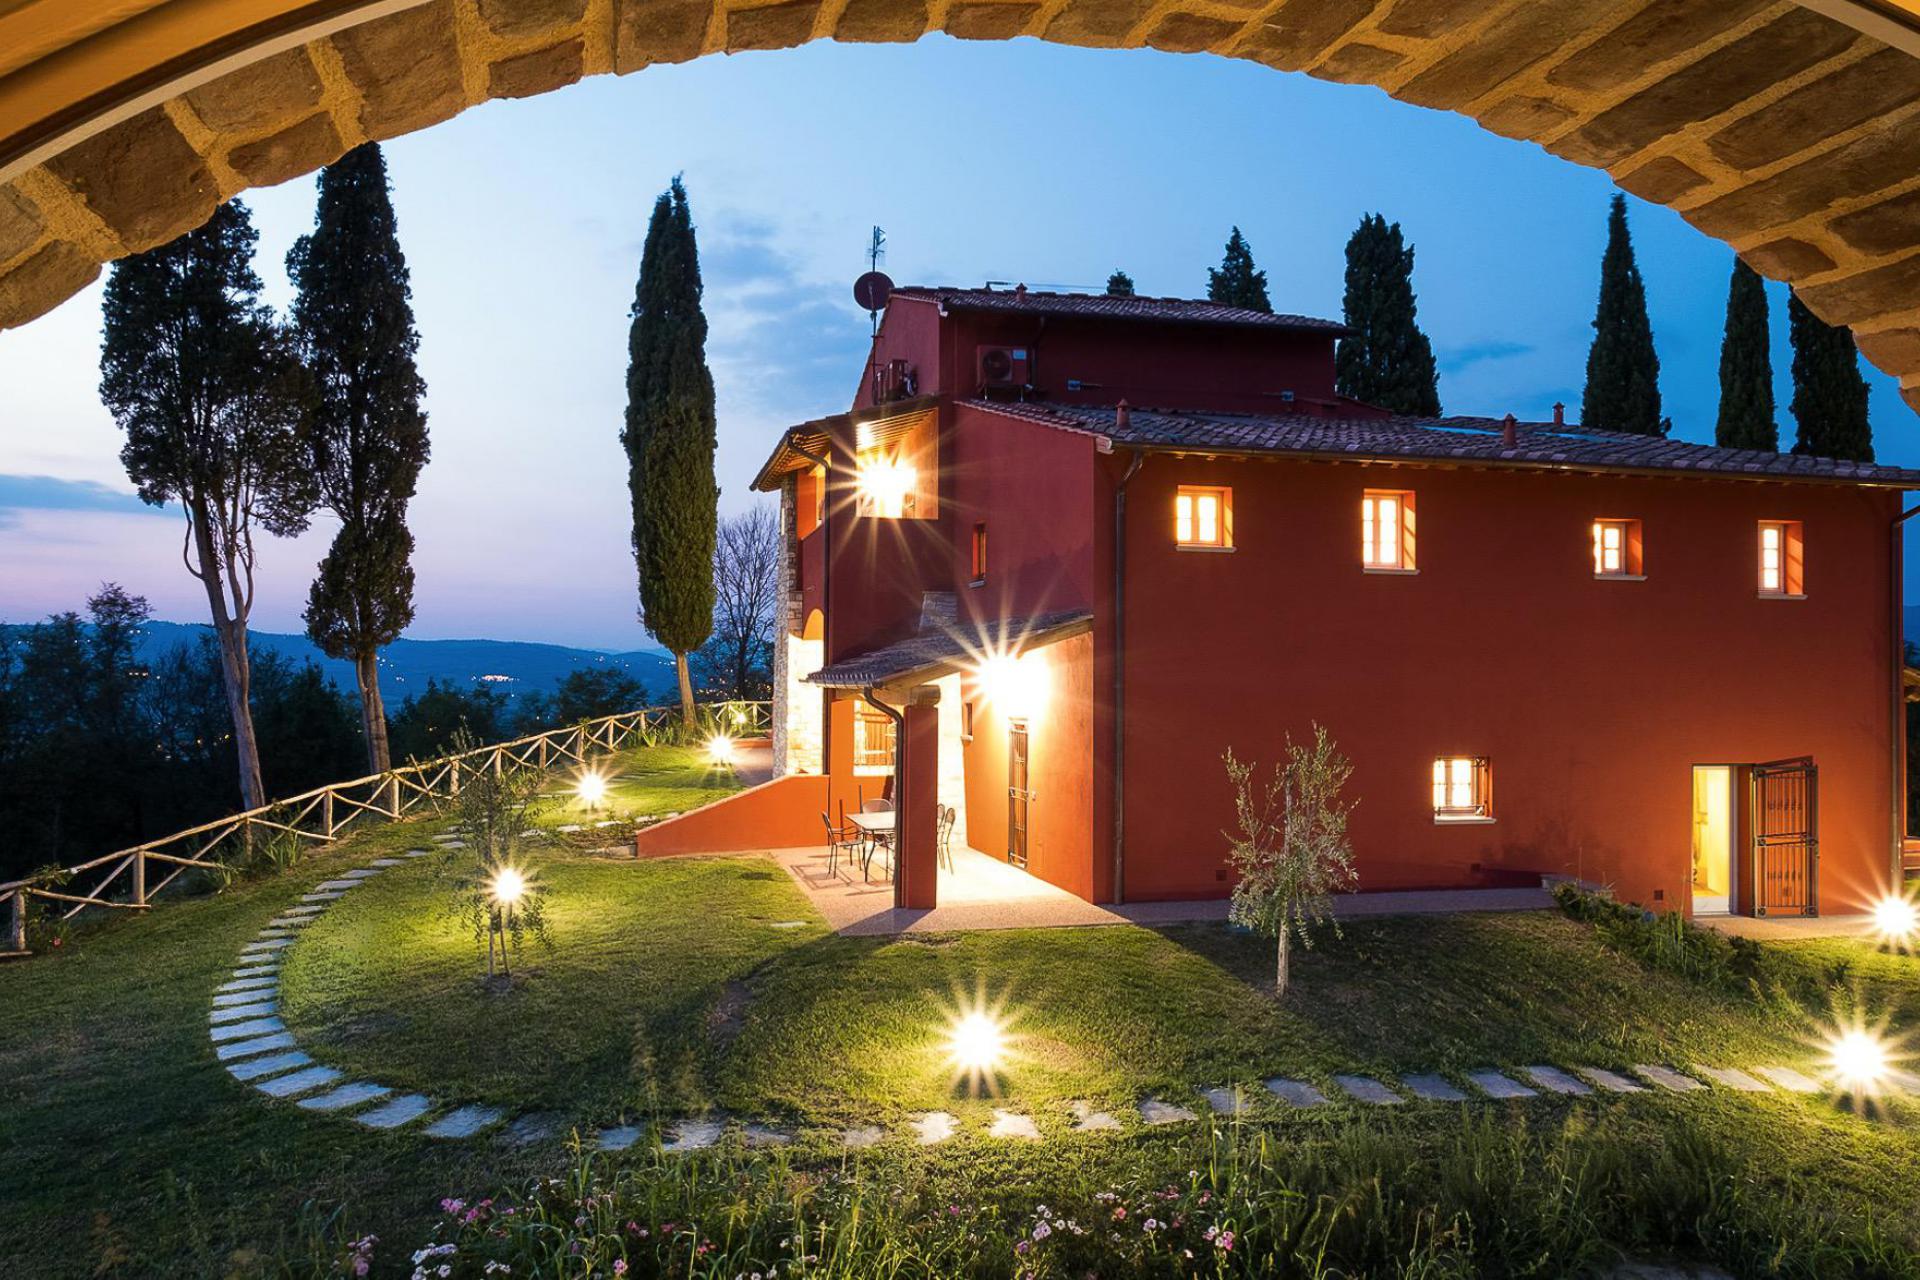 Familievriendelijke appartementen in hartje Toscane